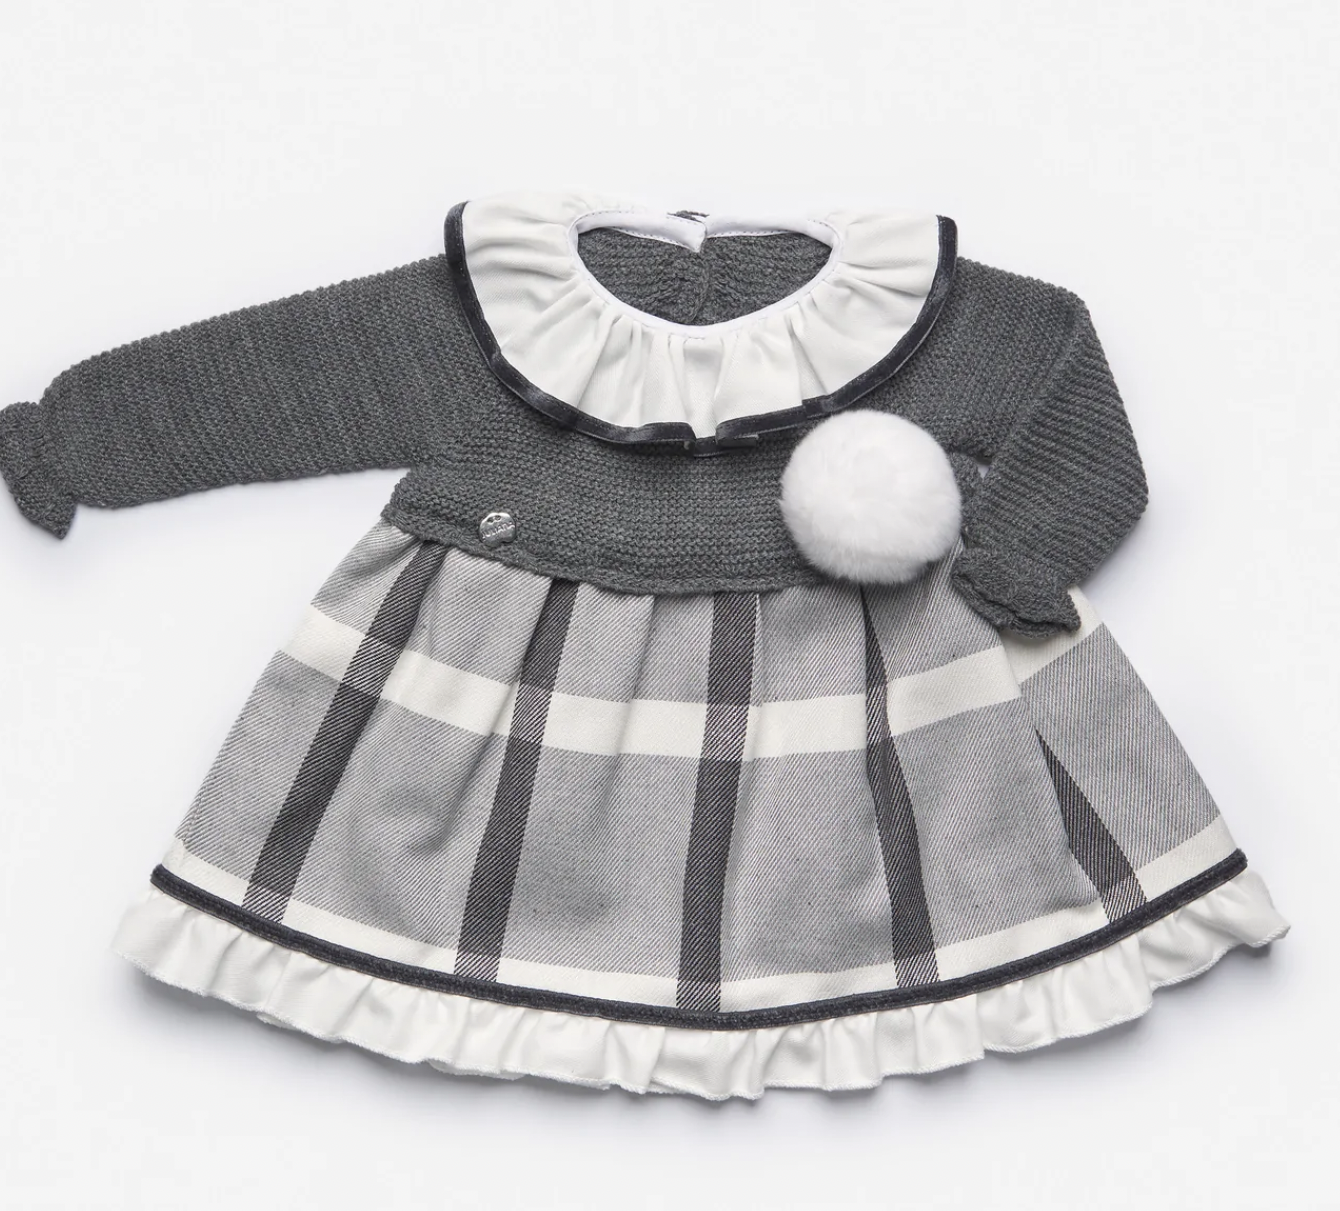 Juliana Charcoal Grey Knit Check Dress